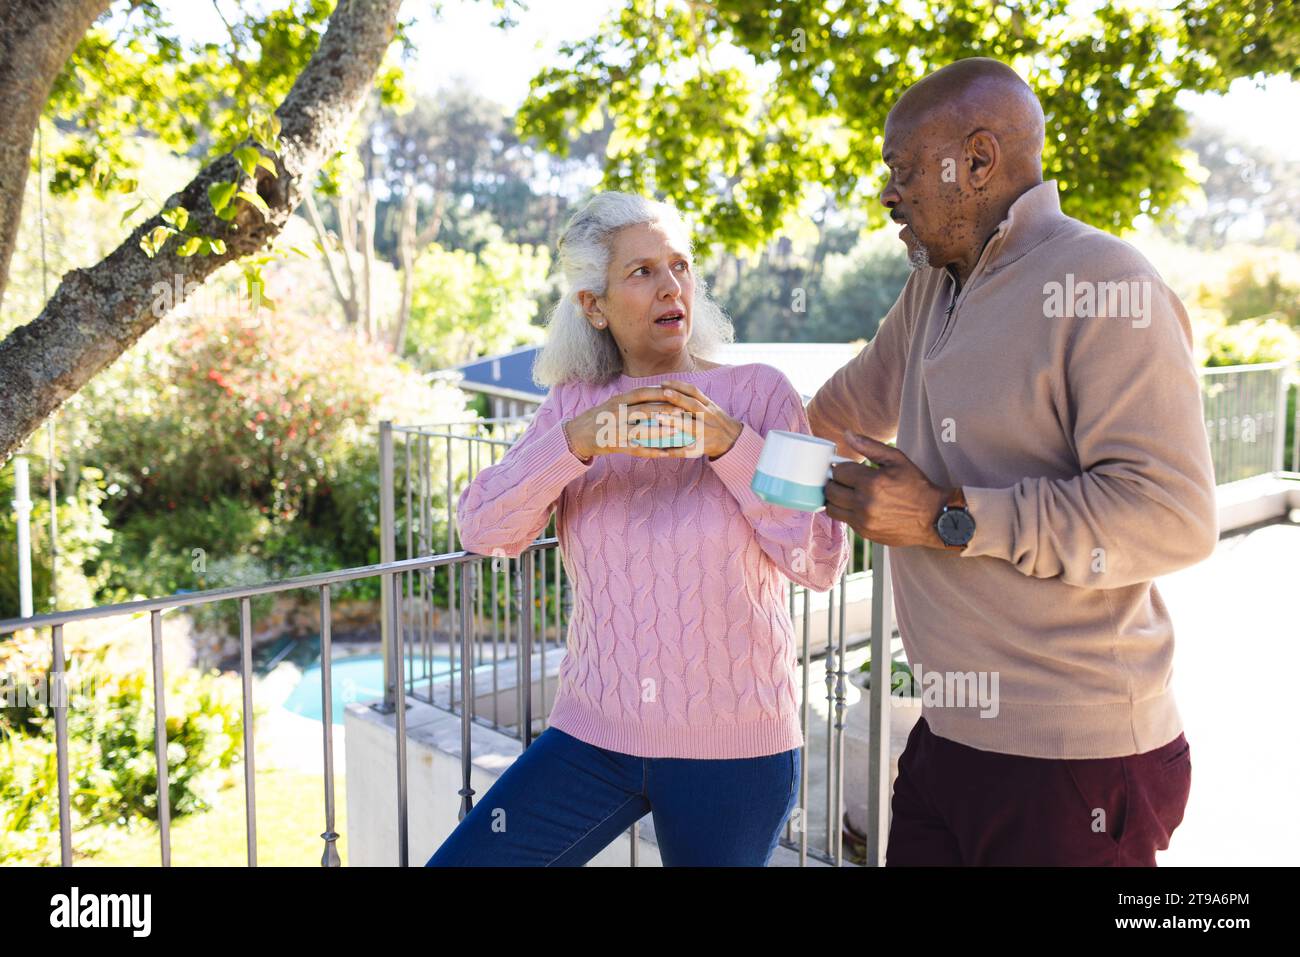 Diverse Seniorenpaare trinken Kaffee und unterhalten sich auf der sonnigen Terrasse. Lebensstil, Ruhestand, Seniorenleben, Natur, Zweisamkeit und häusliches Leben, u Stockfoto